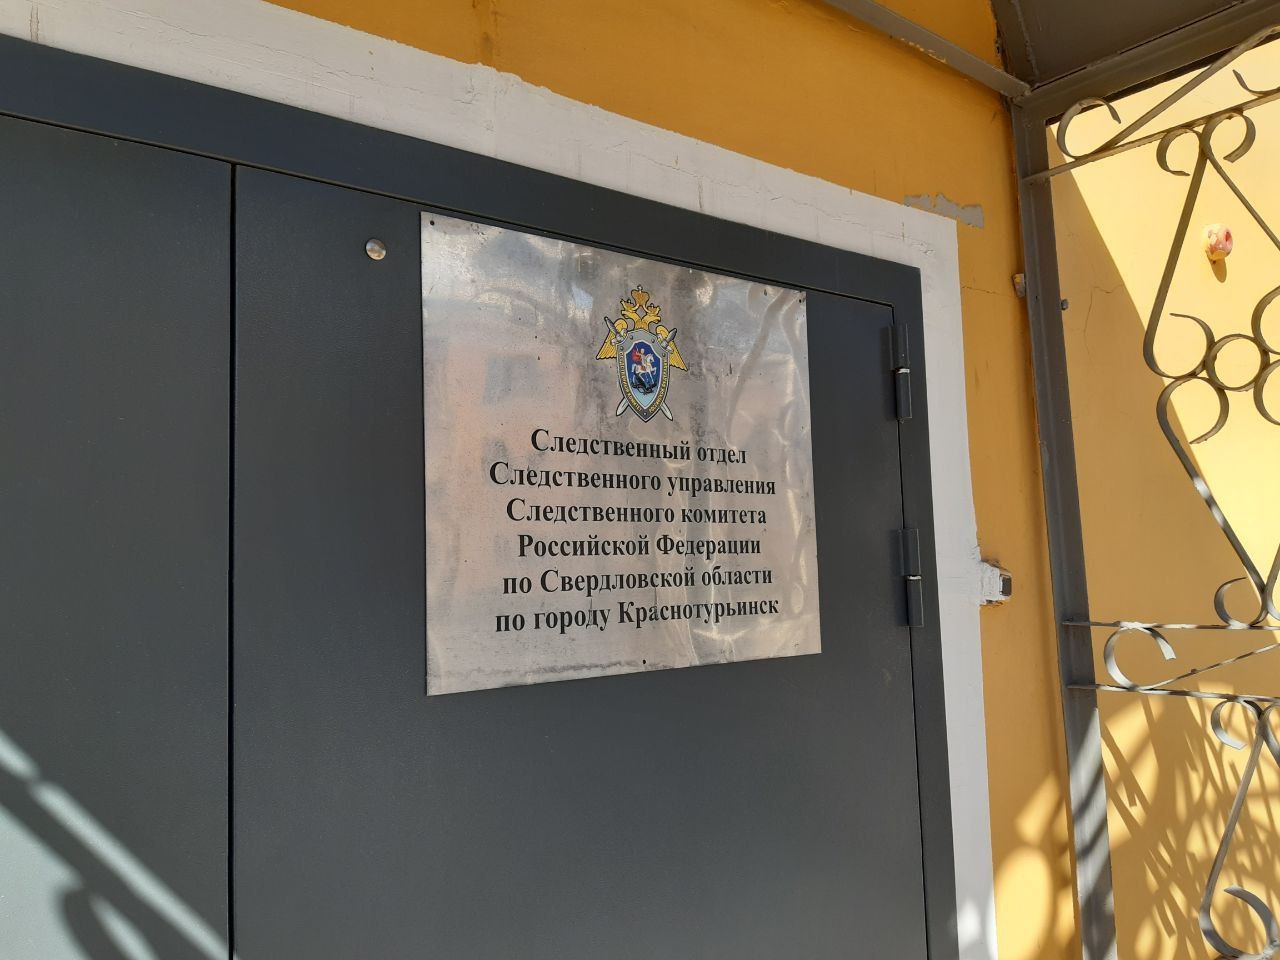 Жителя Талицкого района арестовали по обвинению в причинении вреда здоровью, повлекшего смерть